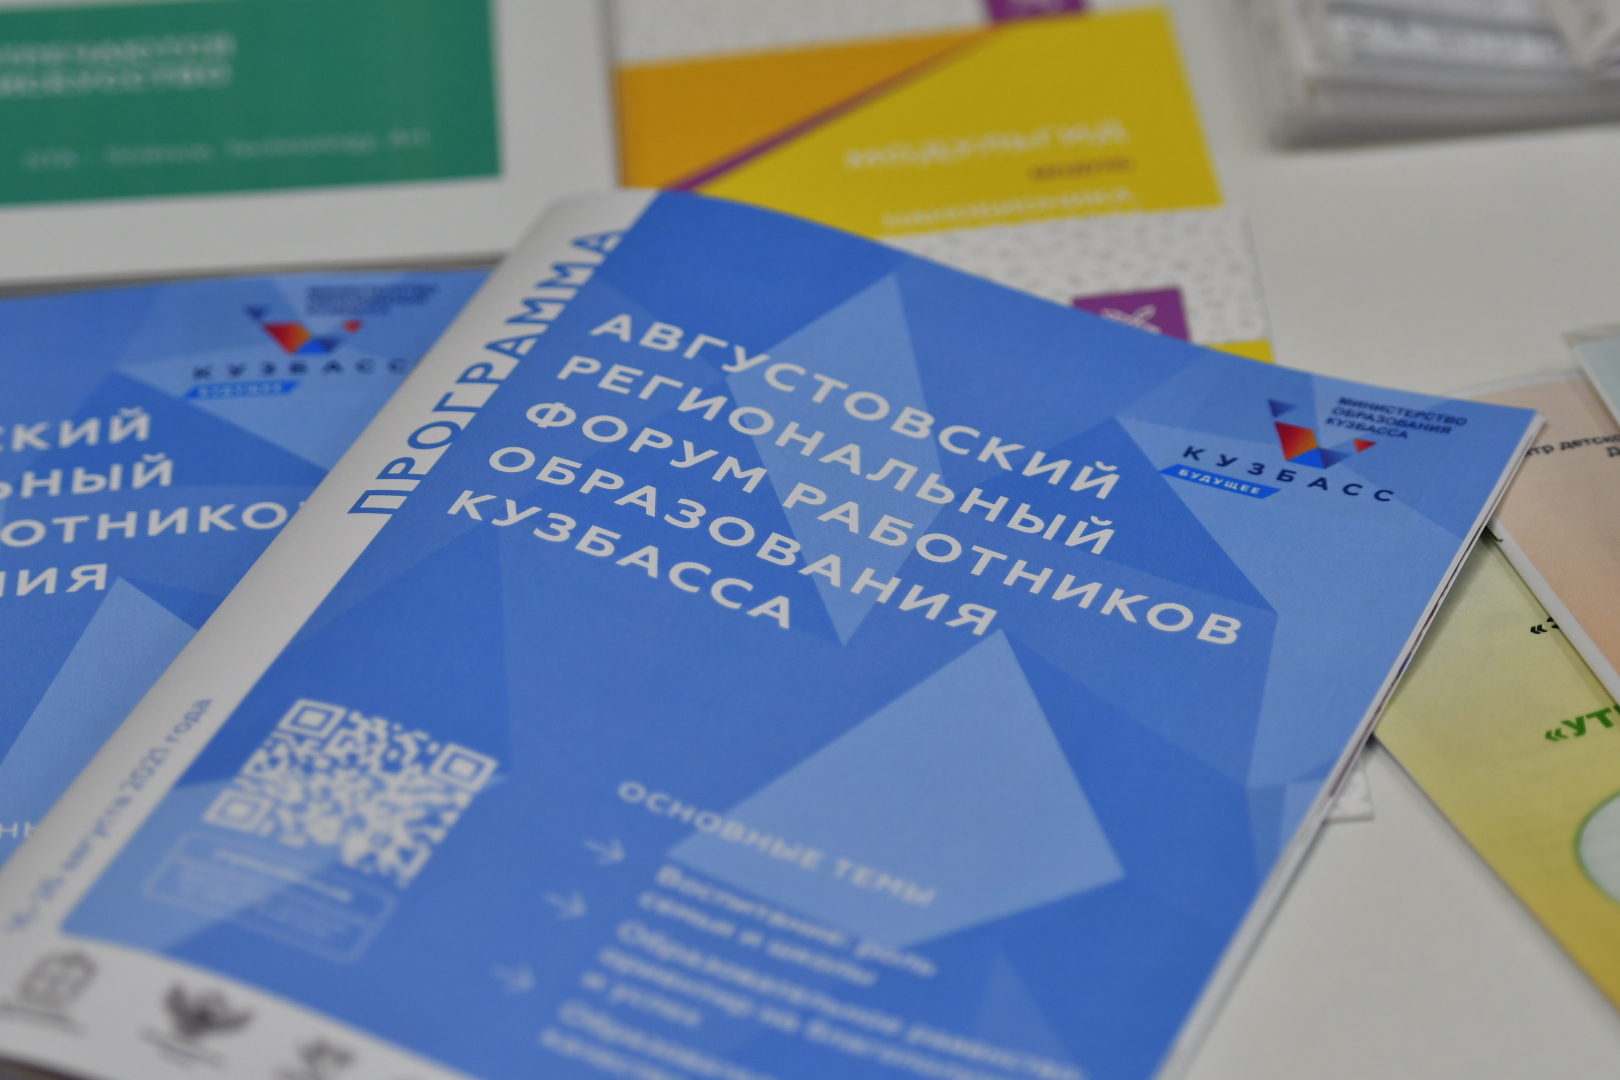 В Кузбассе подвели итоги Августовского регионального форума работников образования